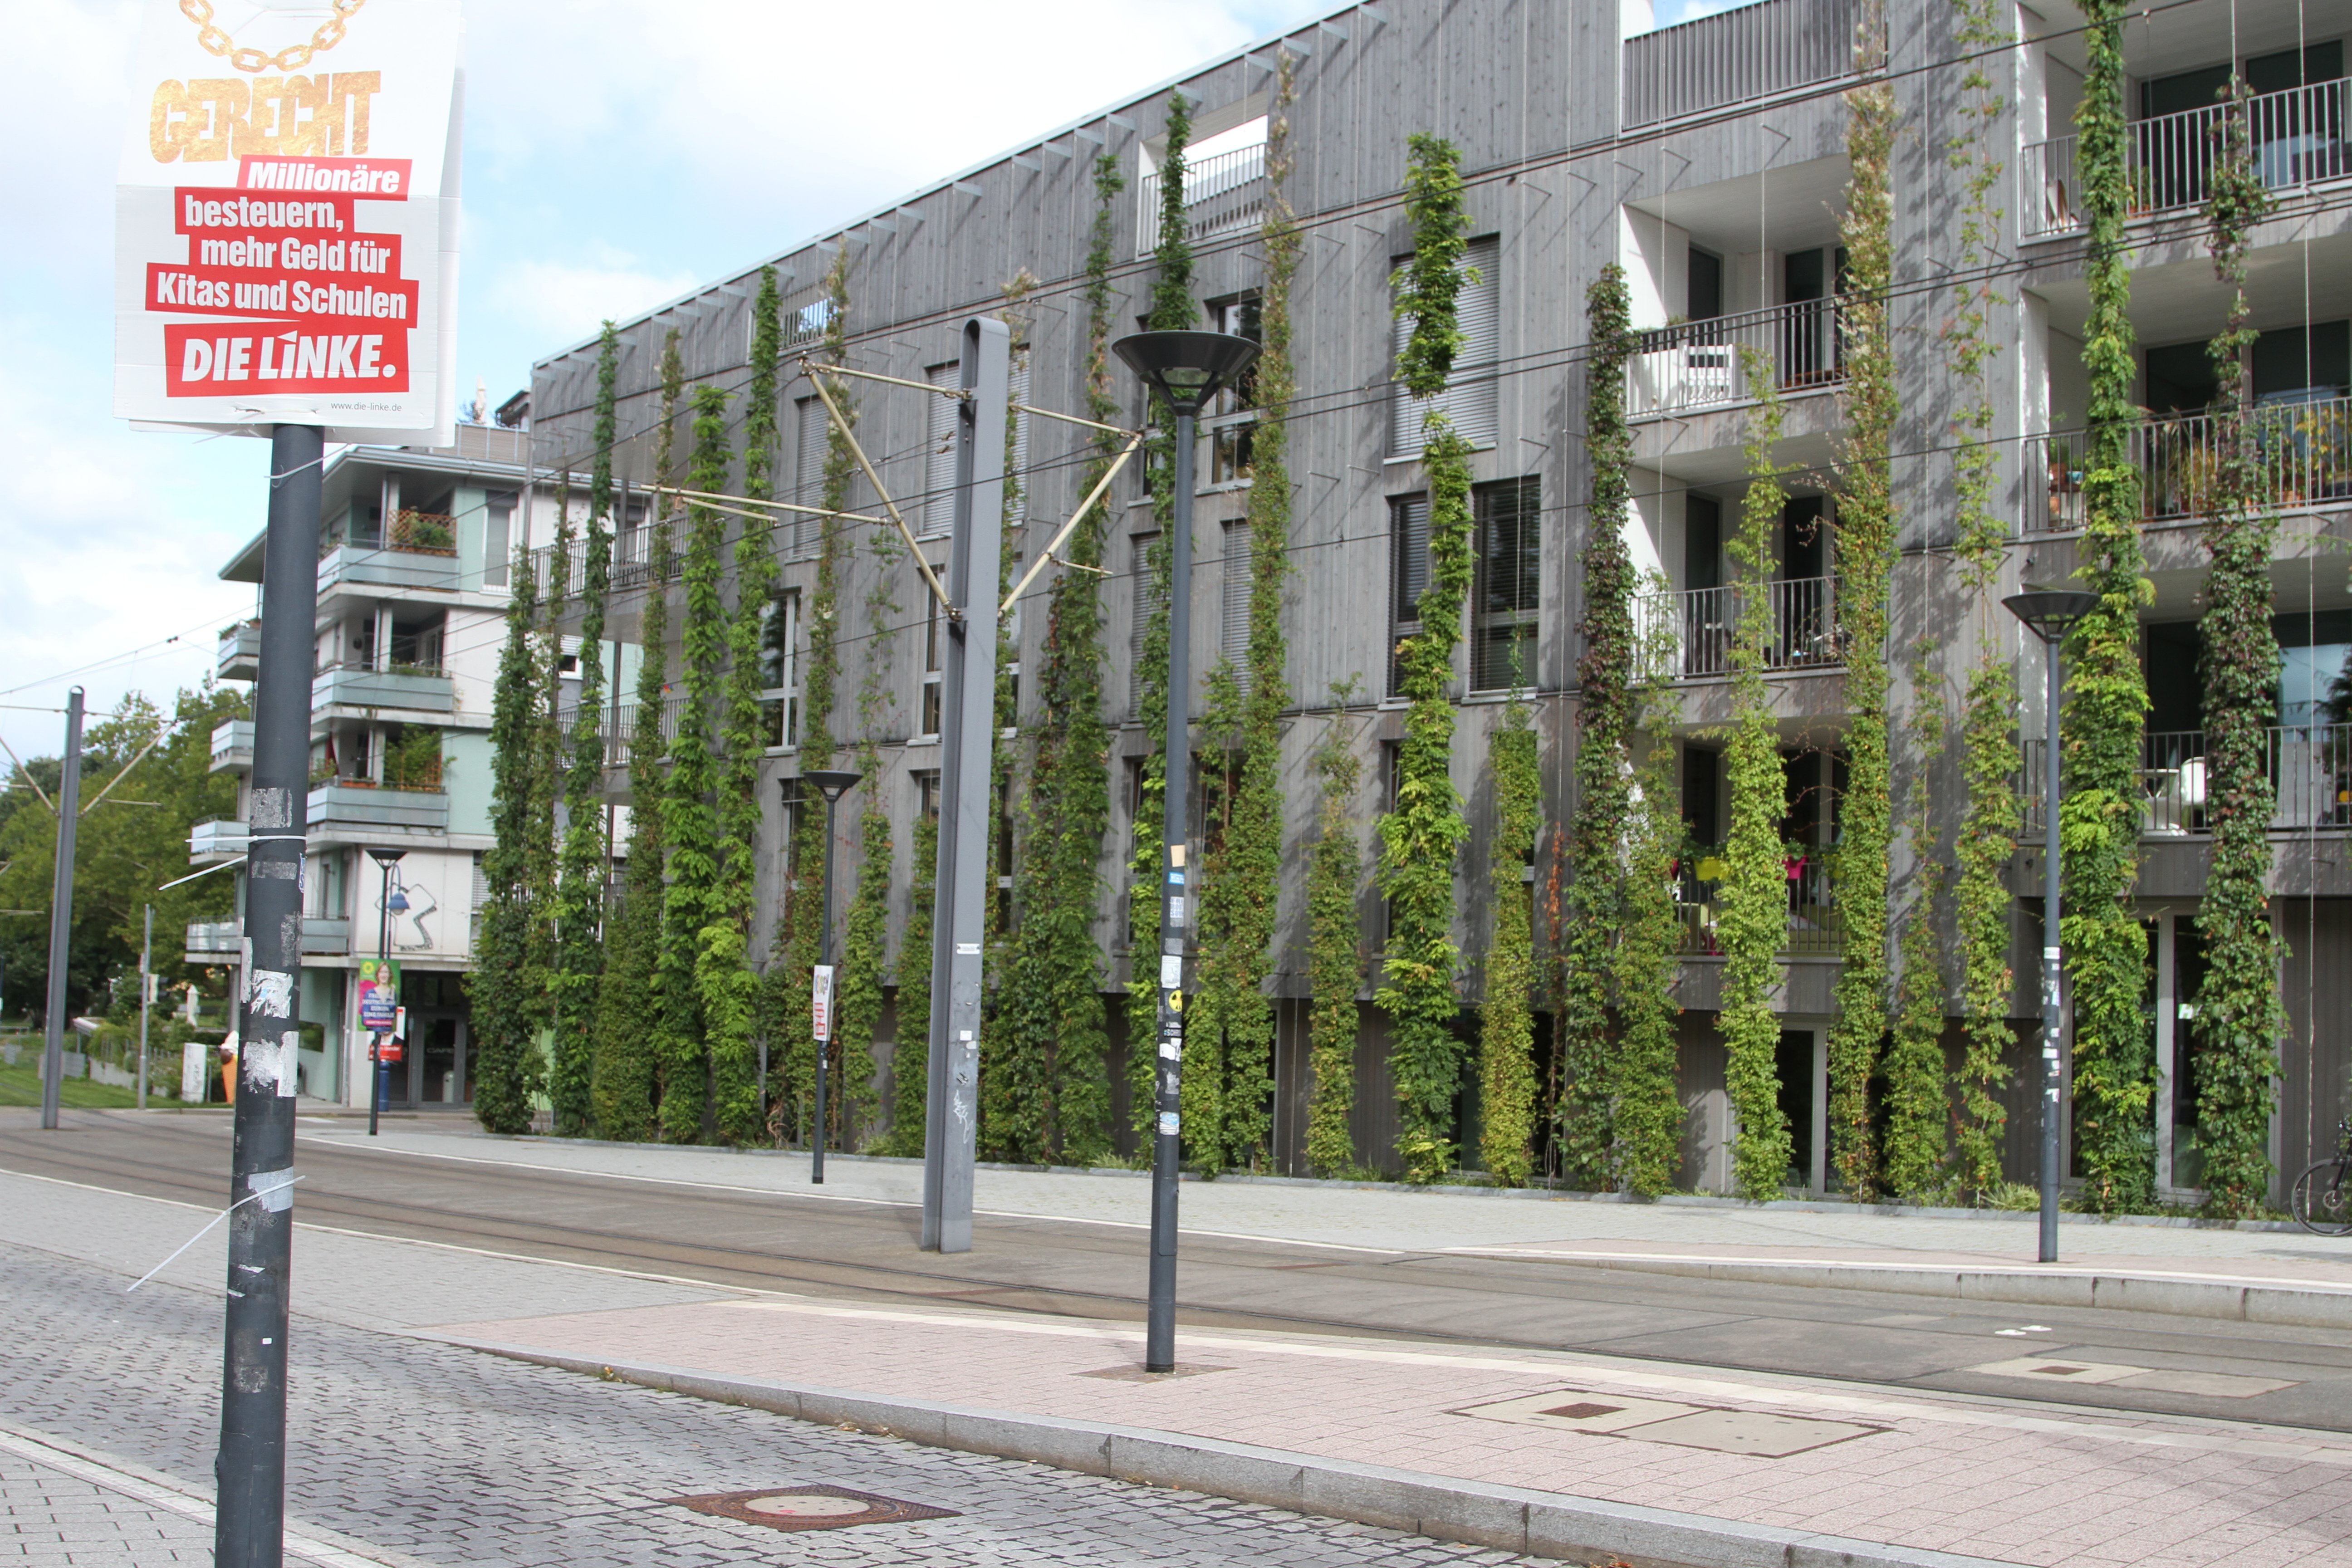 Imagen de un gran edificio de cuatro plantas, con varios árboles plantados delante, y una calle.